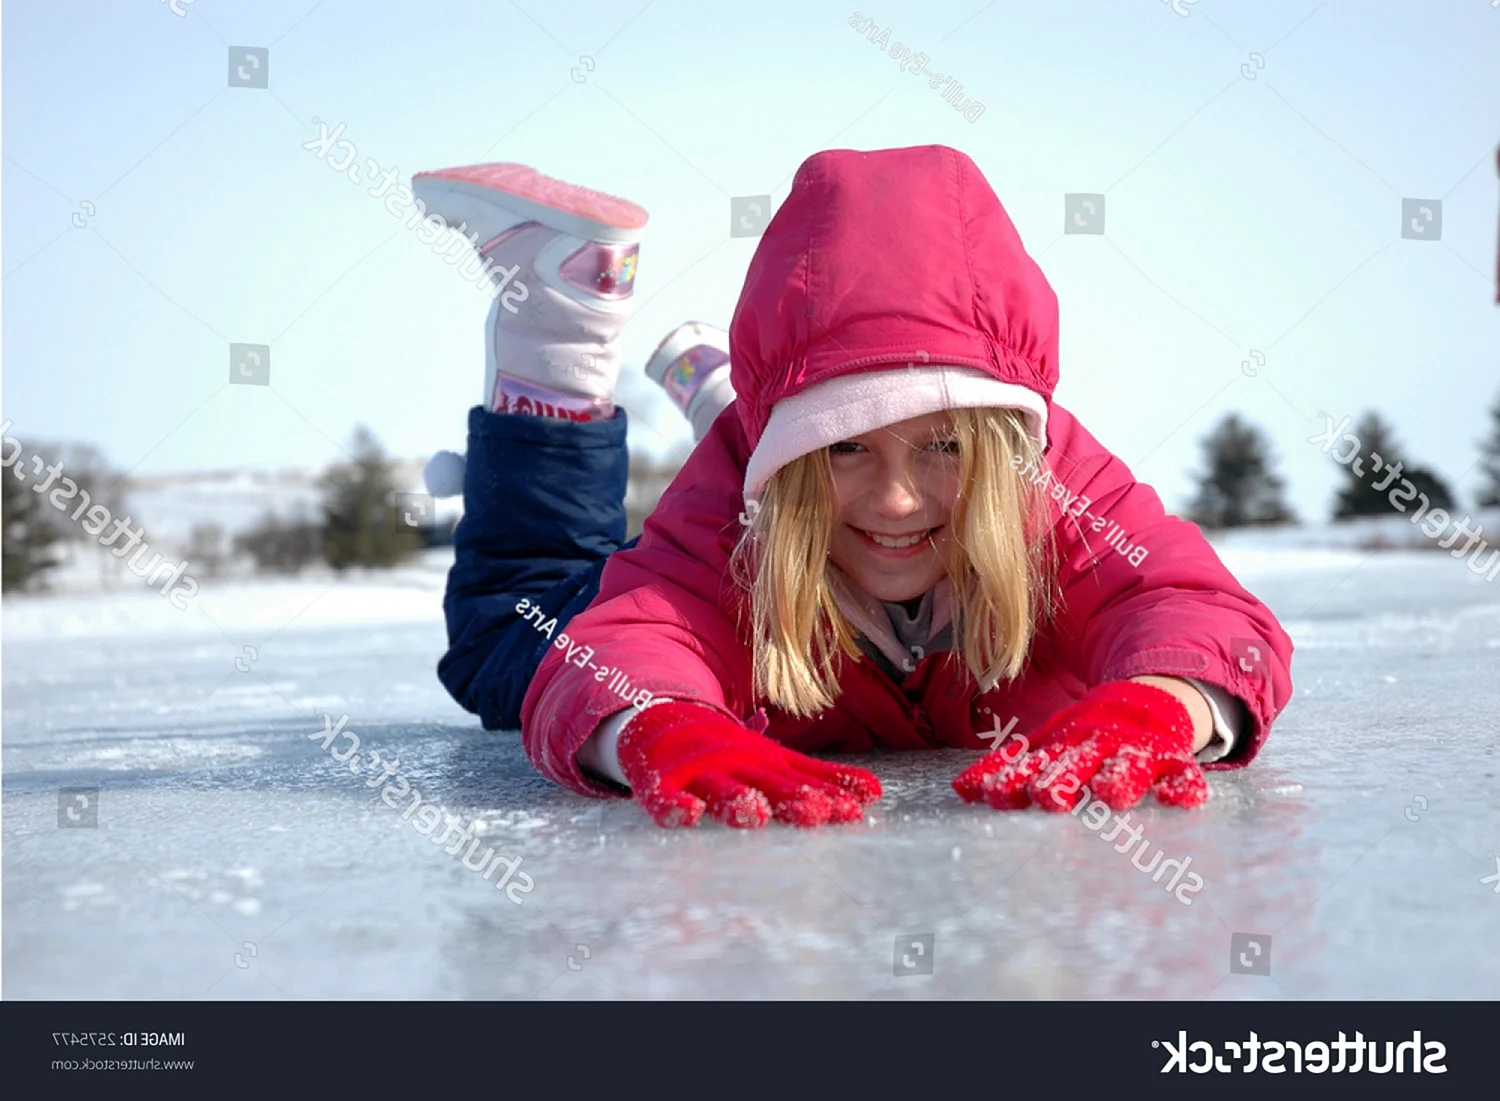 Ребенок падает на льду